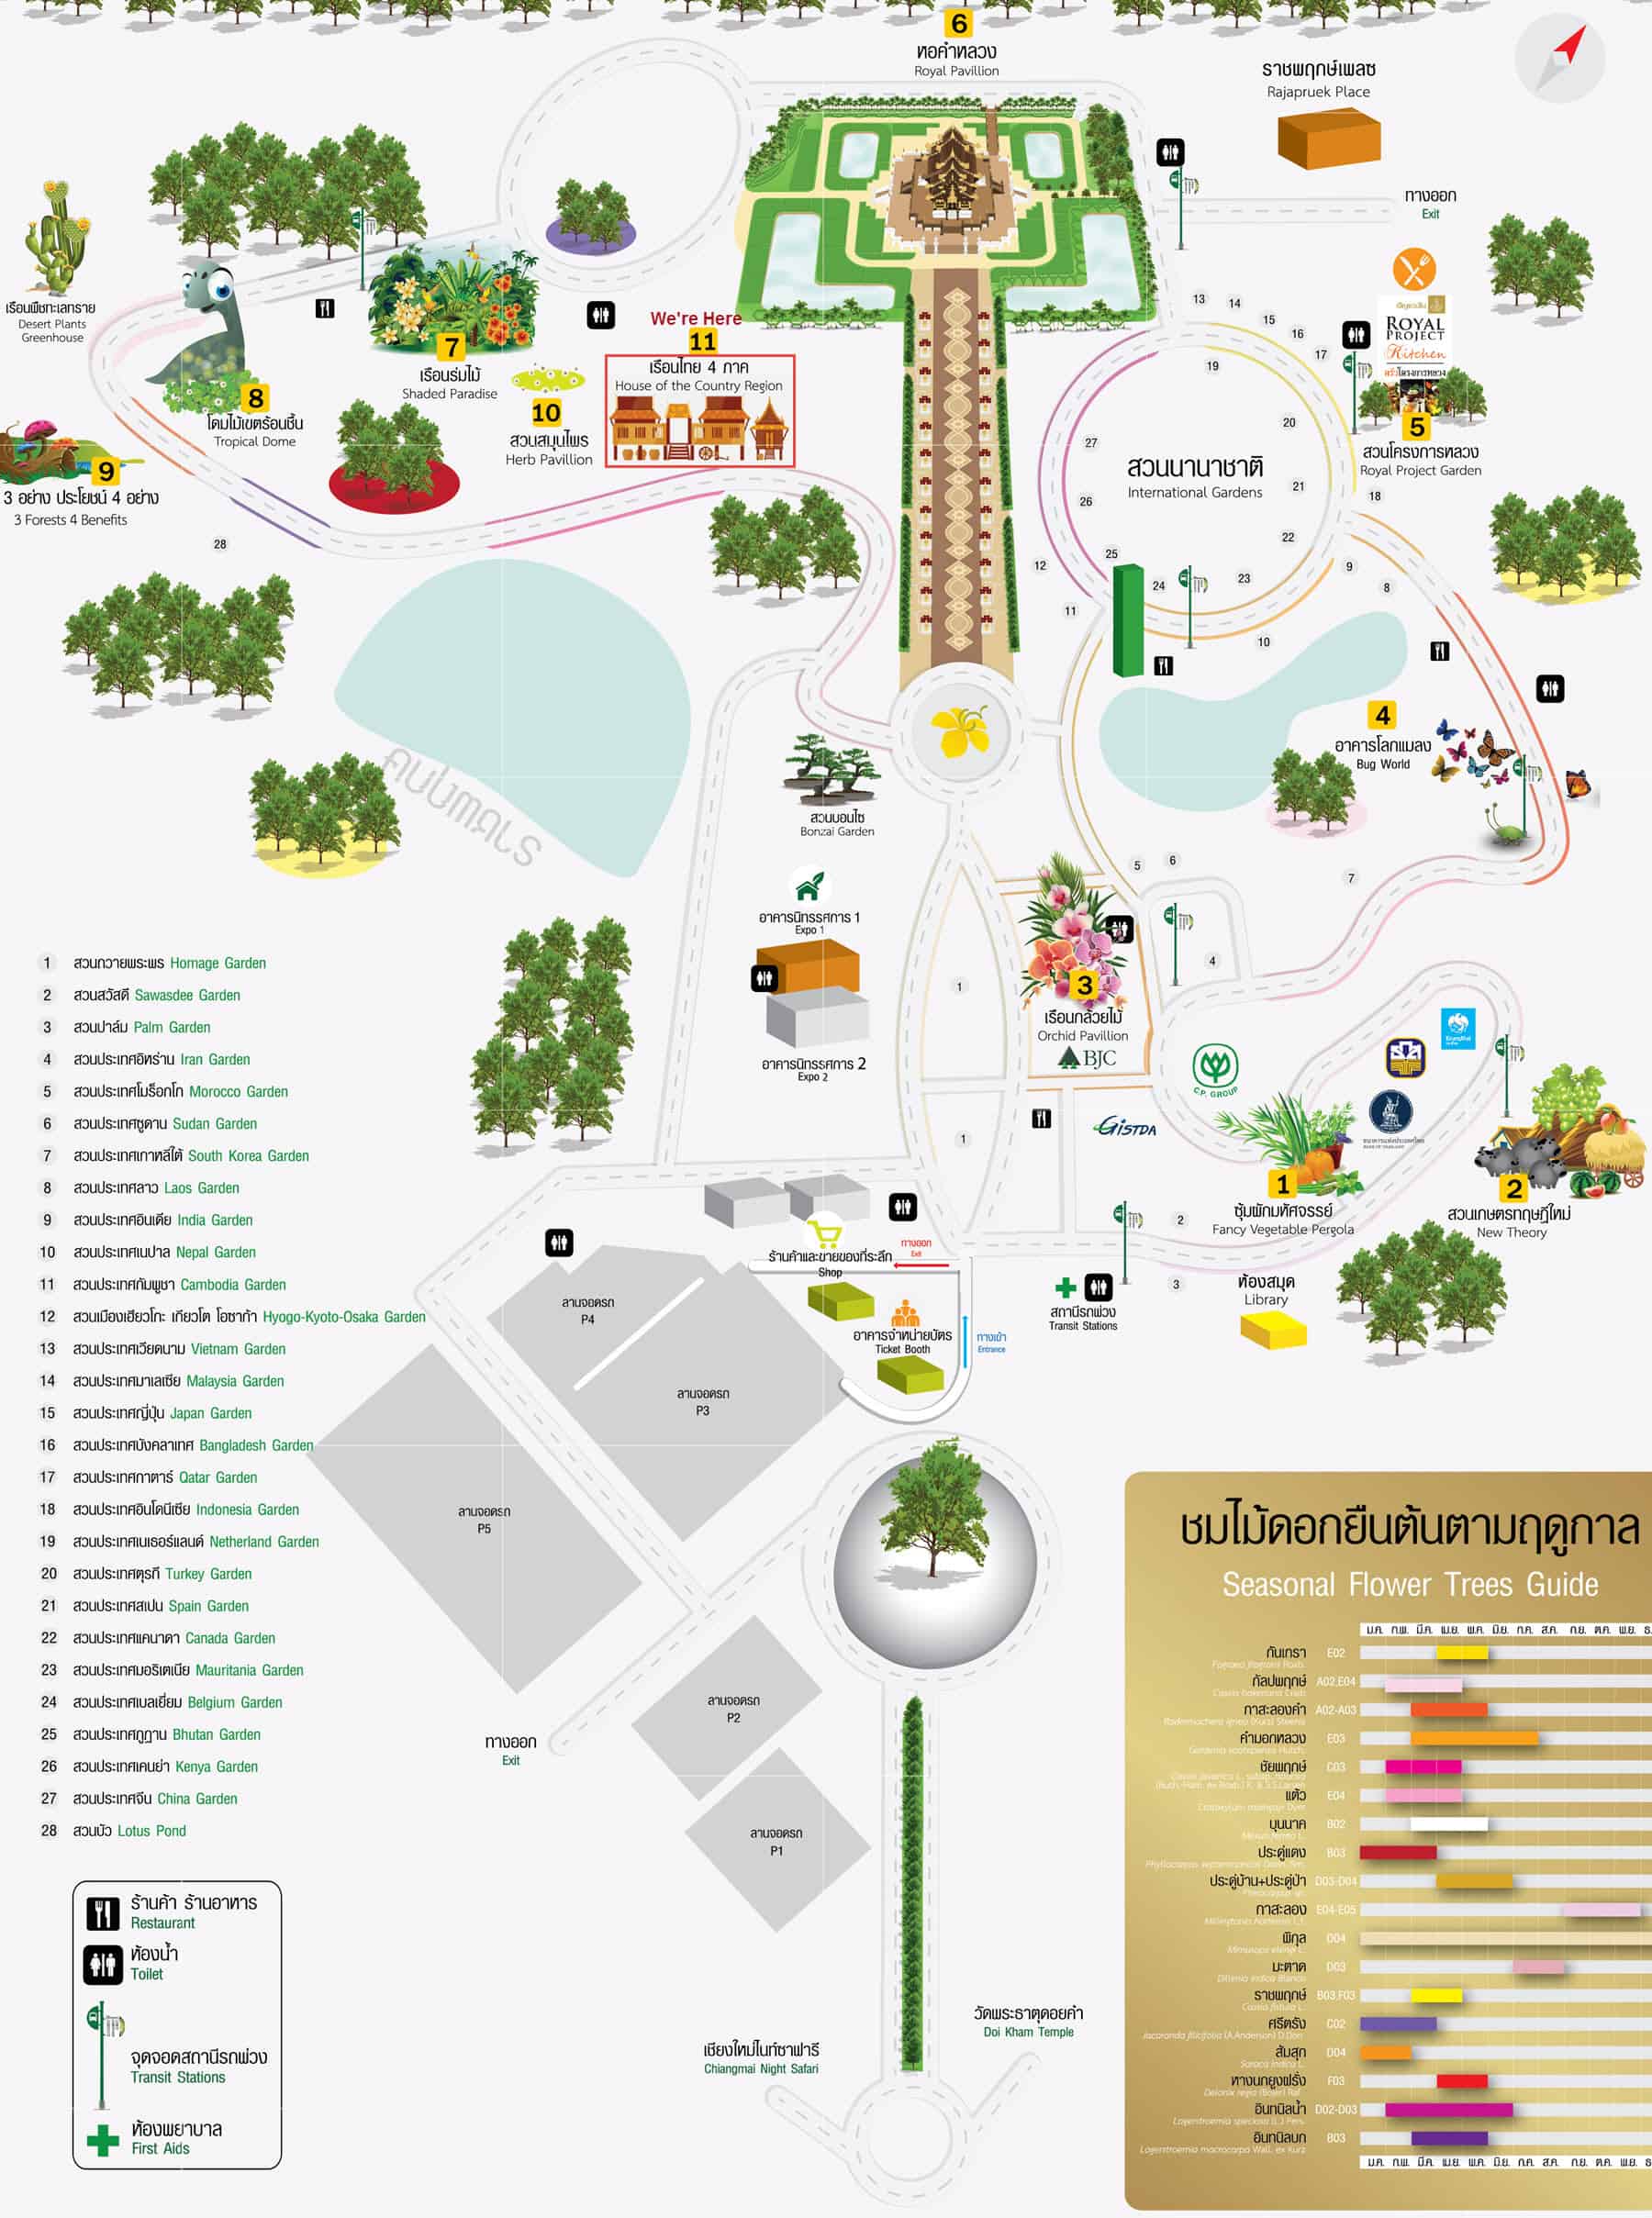 泰國清邁拉查帕皇家花園(Royal Park Rajapruek) 遊園地圖